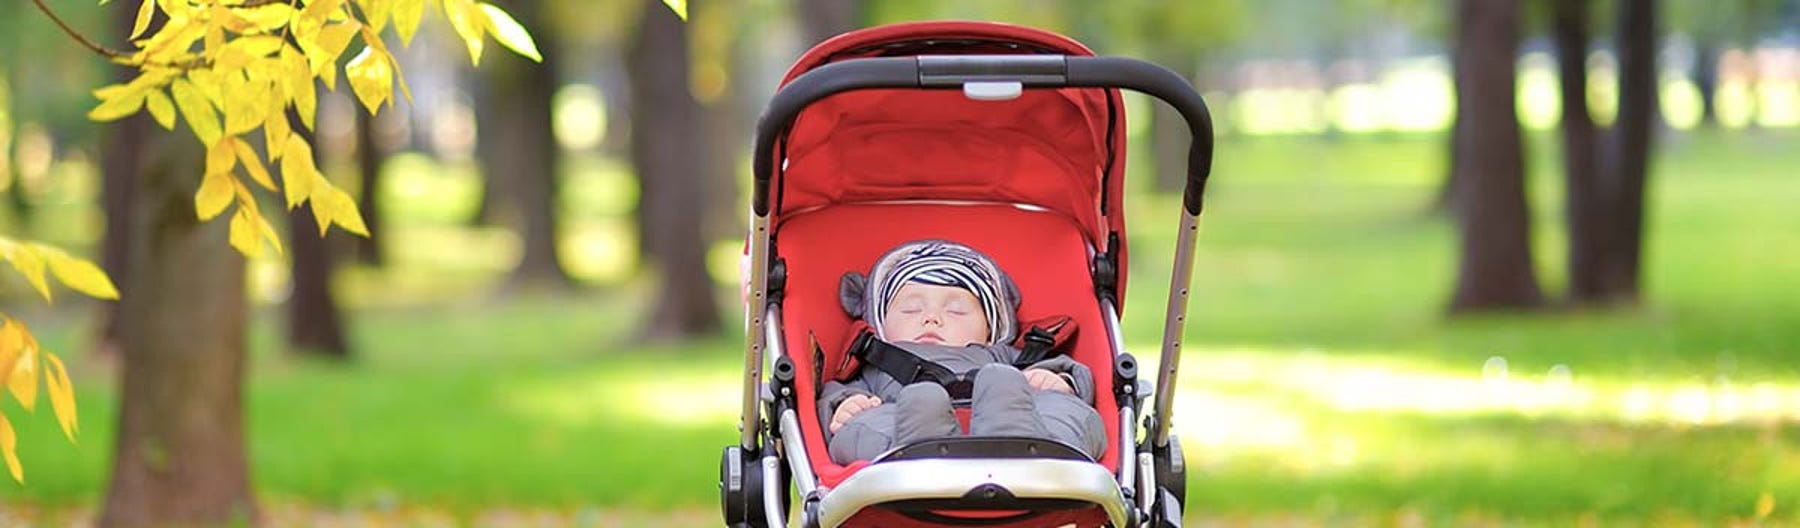 Guide d'achat d'un siège d'auto pour bébé - Blogue Best Buy